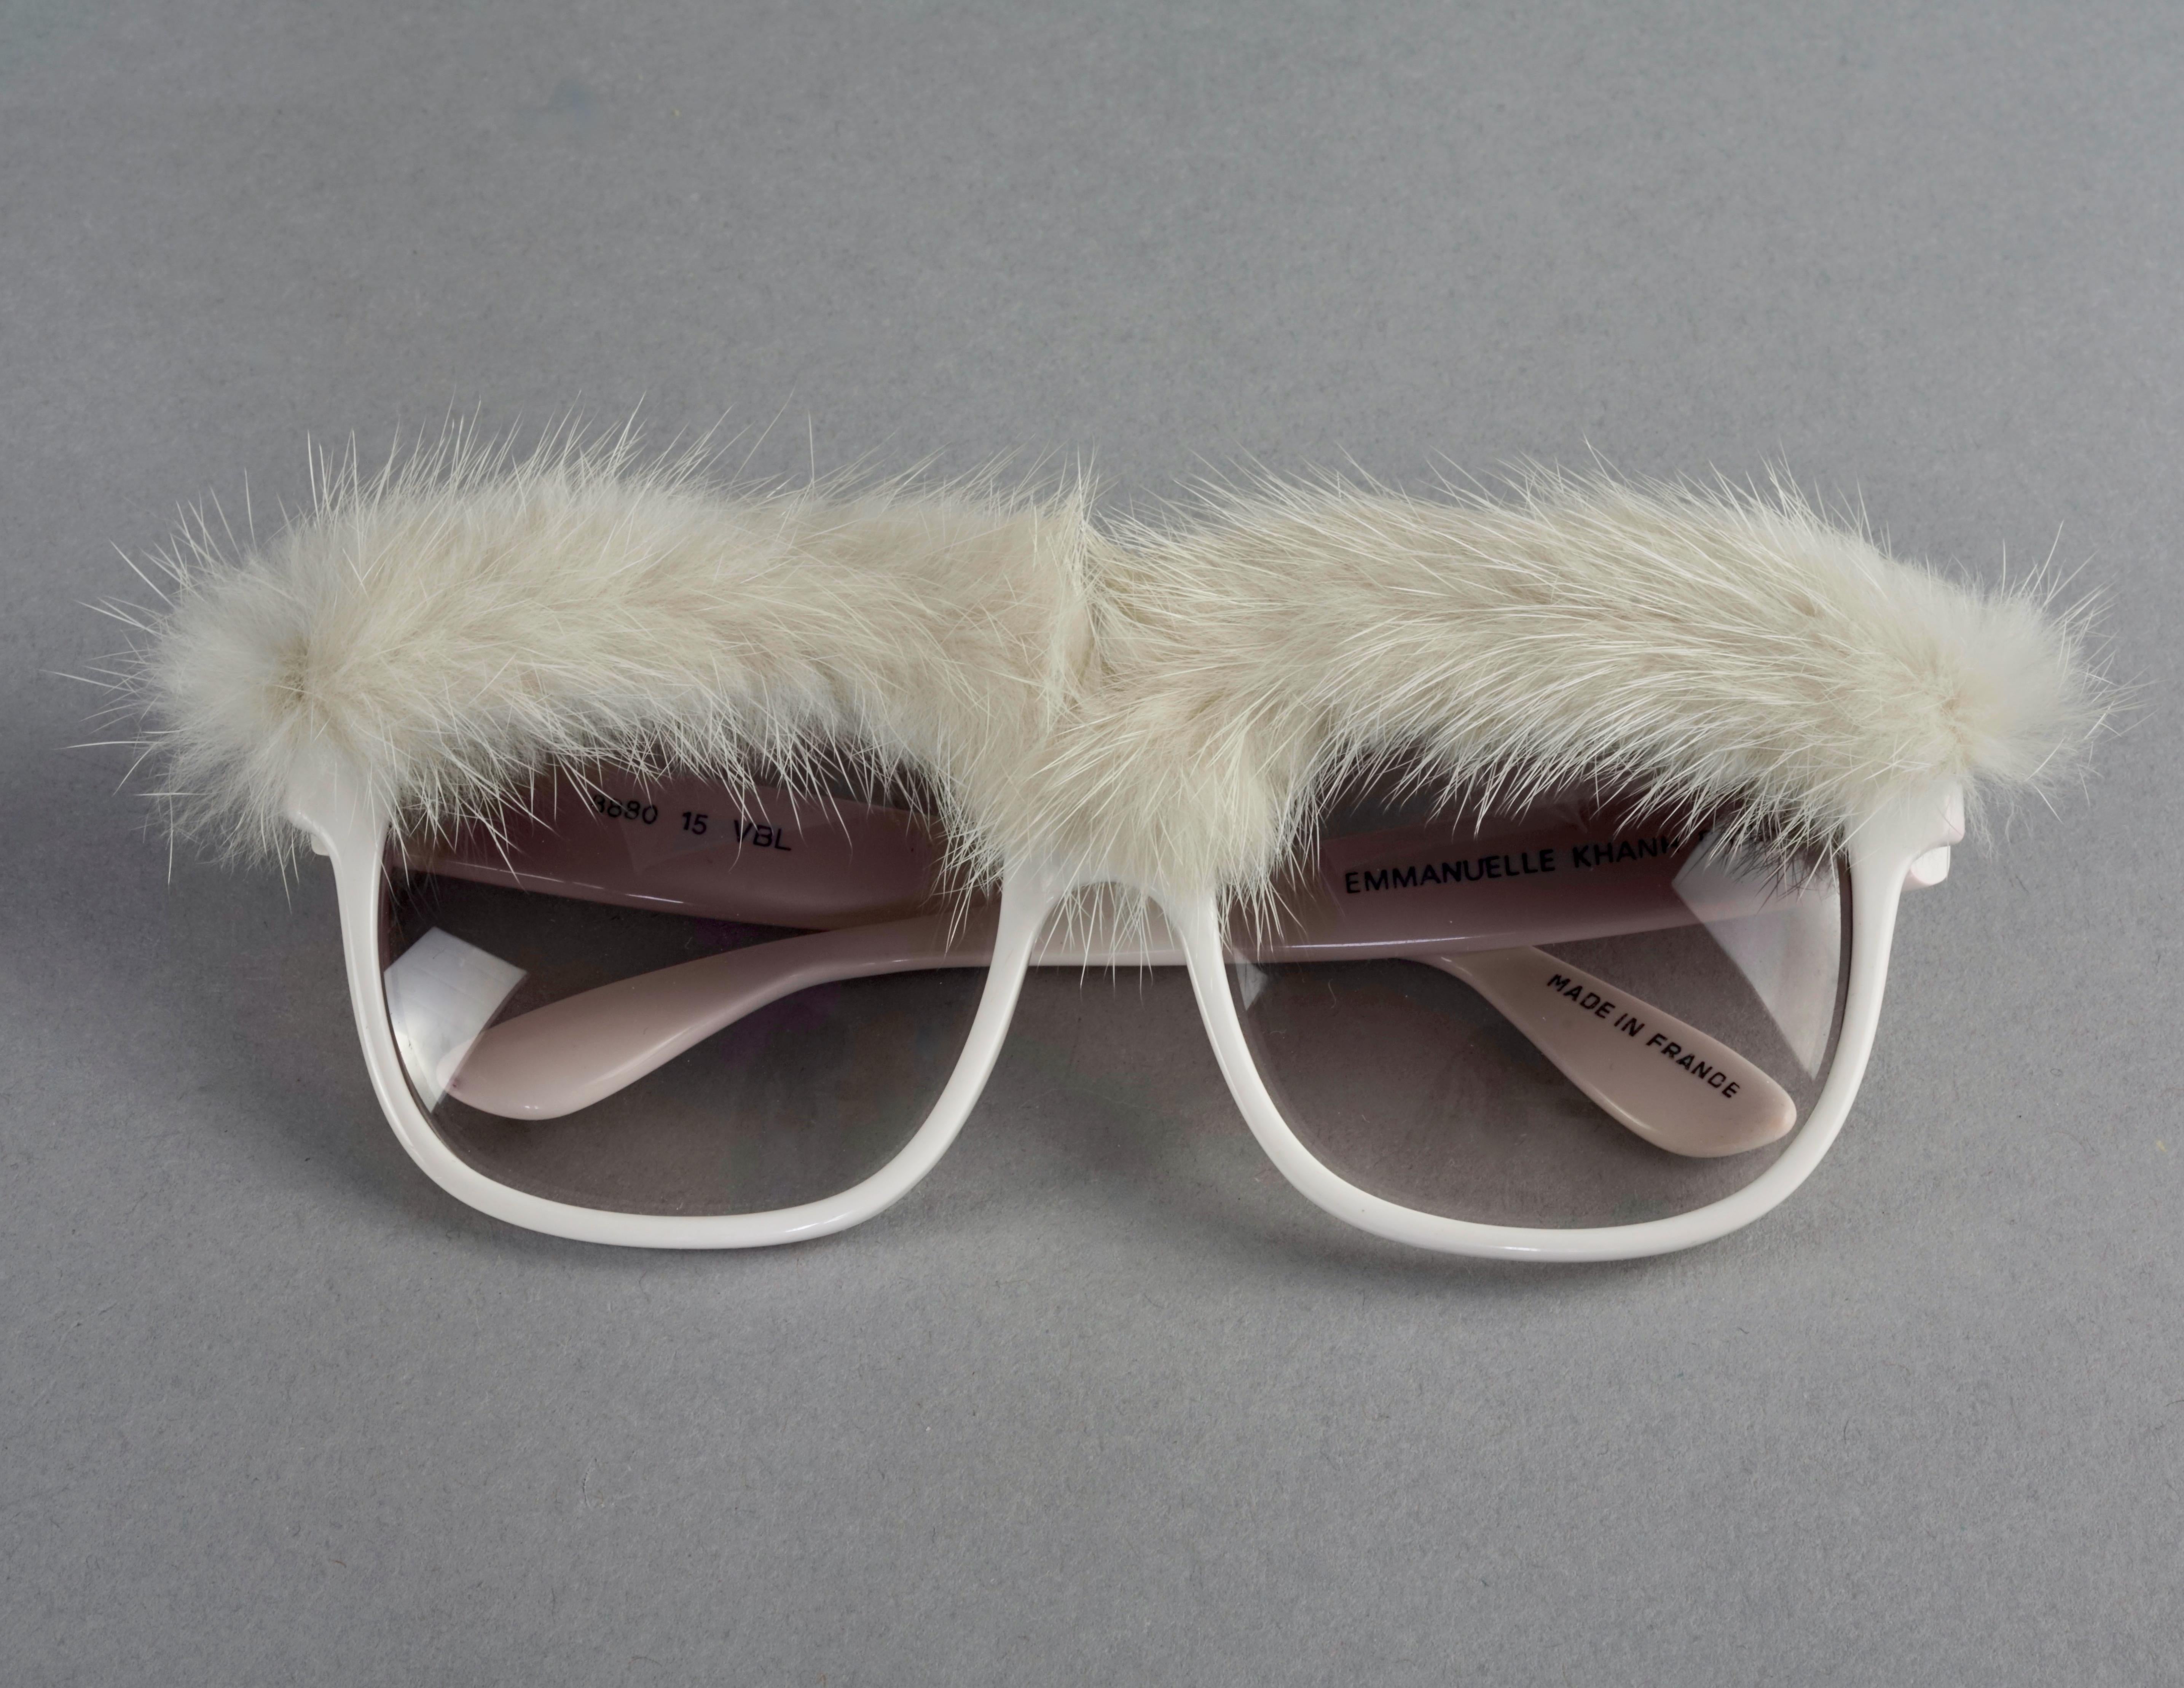 emmanuelle khanh vintage sunglasses